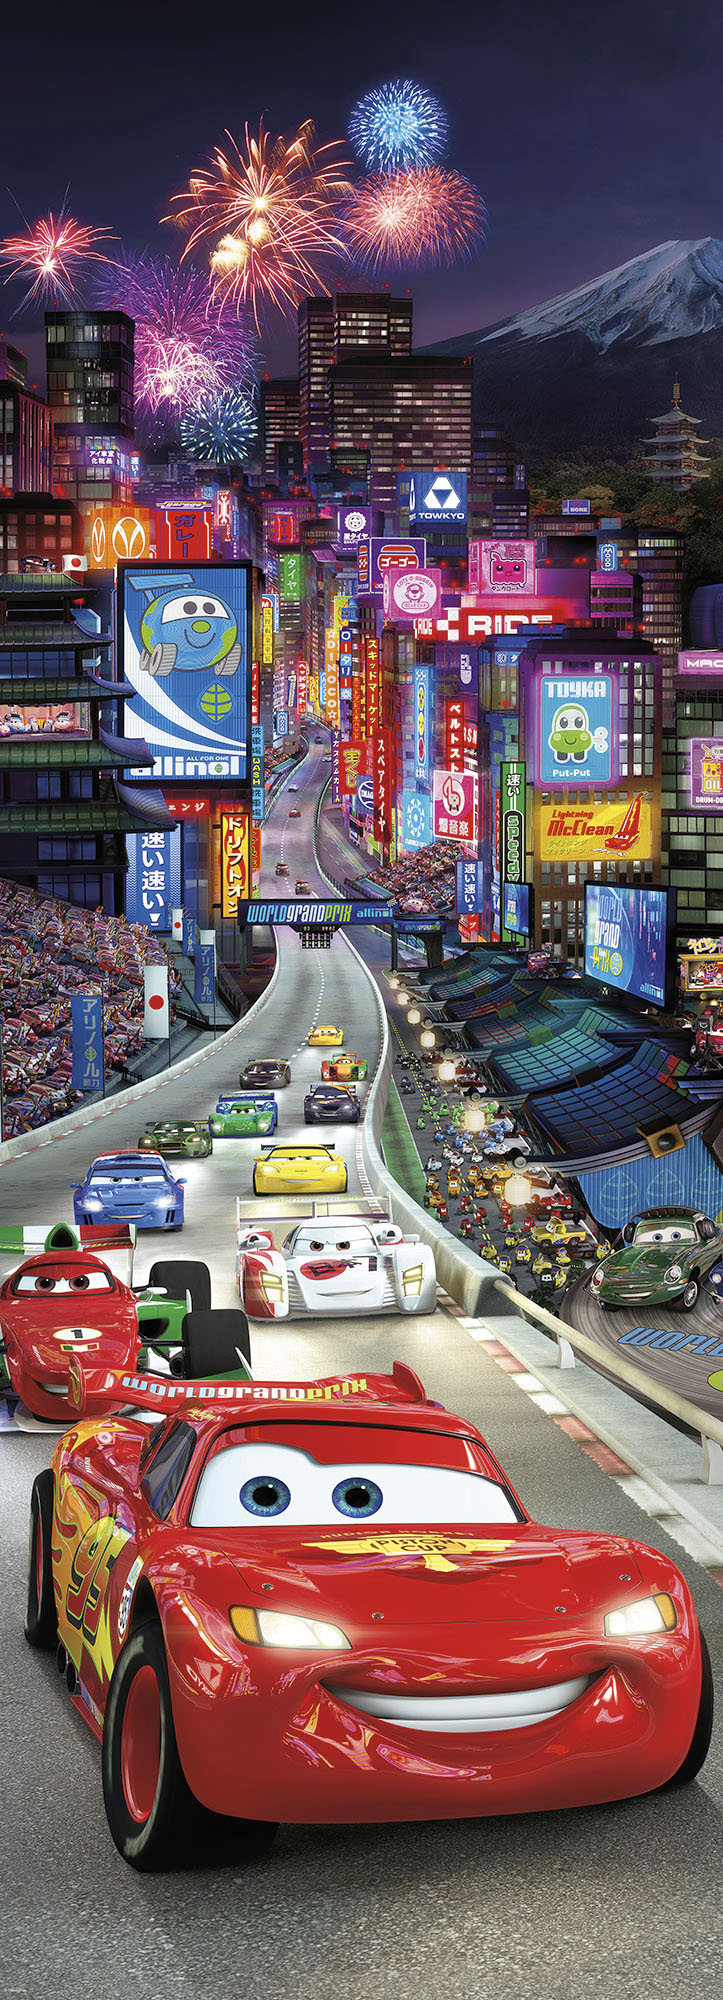 Komar Fototapete »Papier Fototapete - Cars Tokio - Größe 73 x 202 cm«, bedr günstig online kaufen